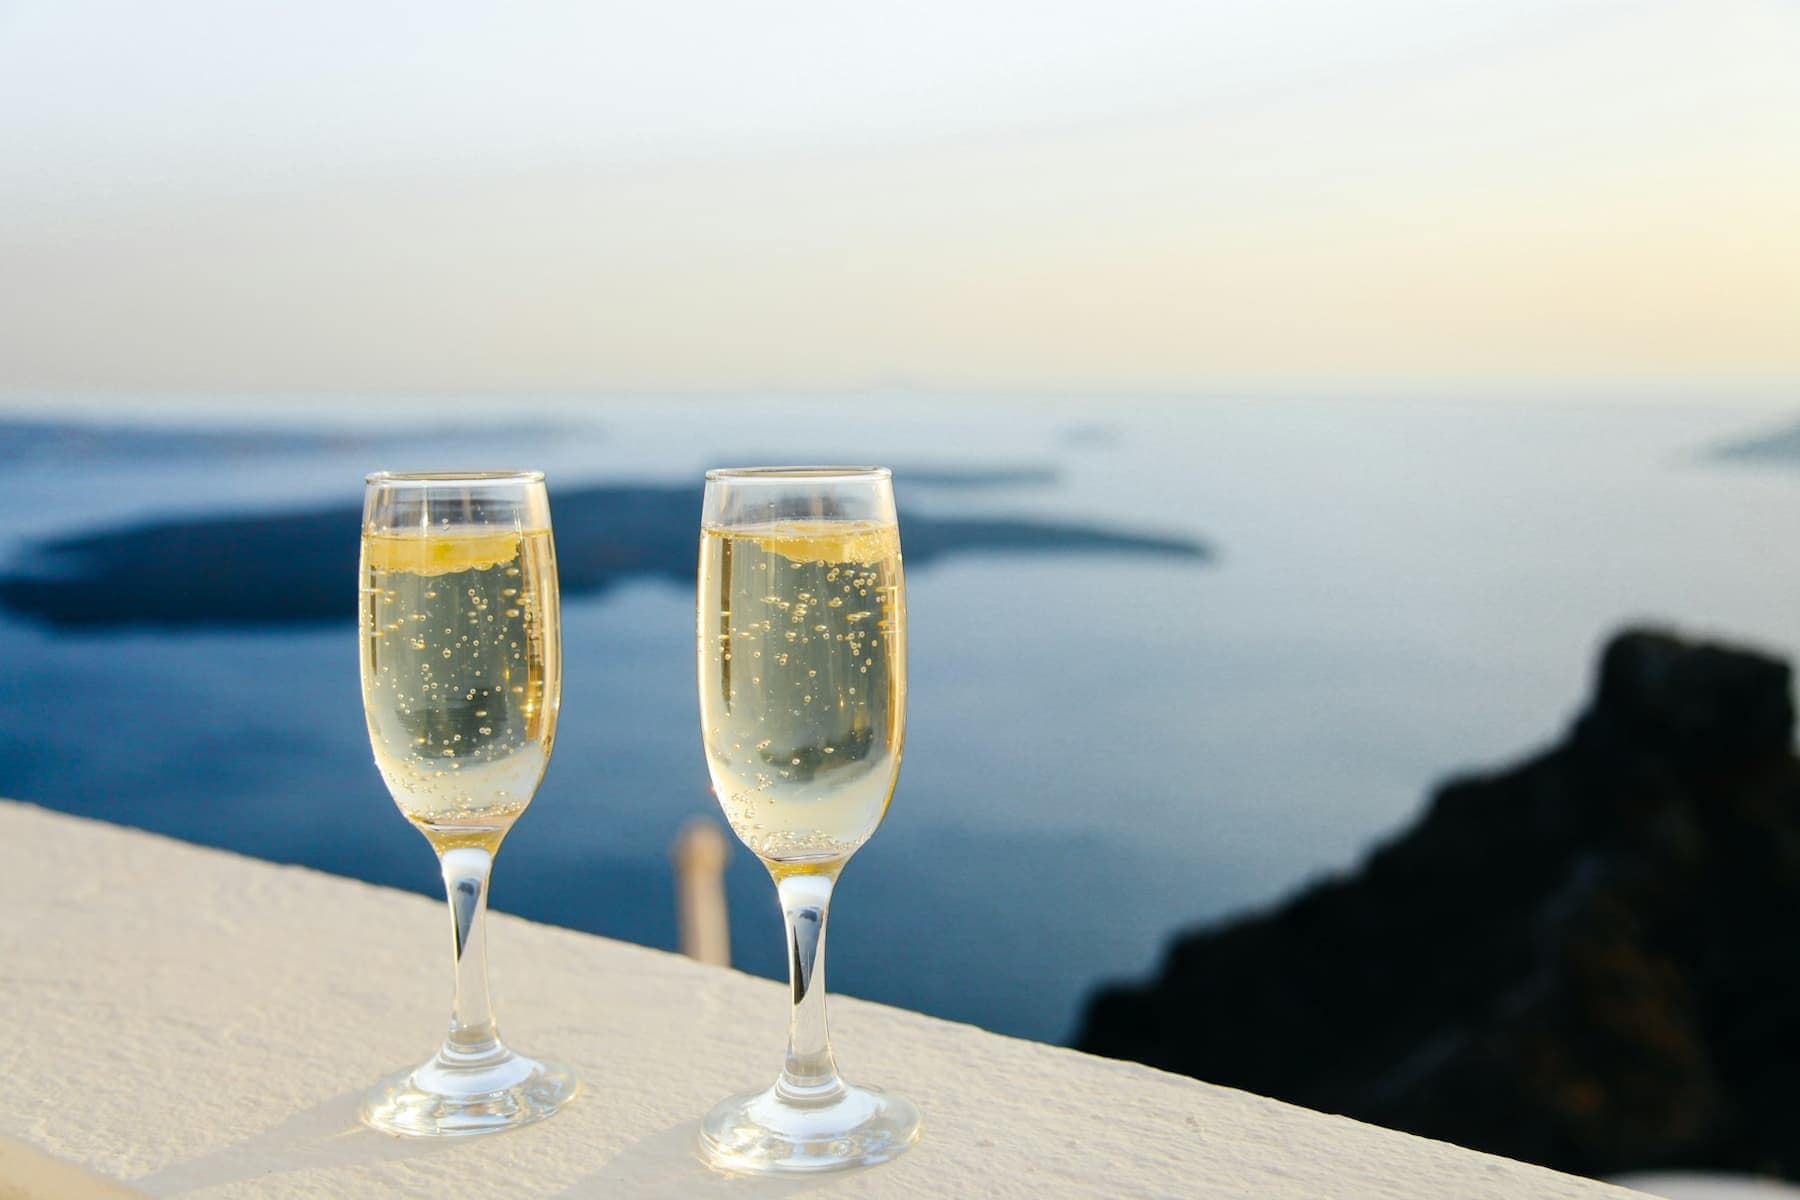 Champagne glasses. Photo by Anthony Delanoix, Unsplash